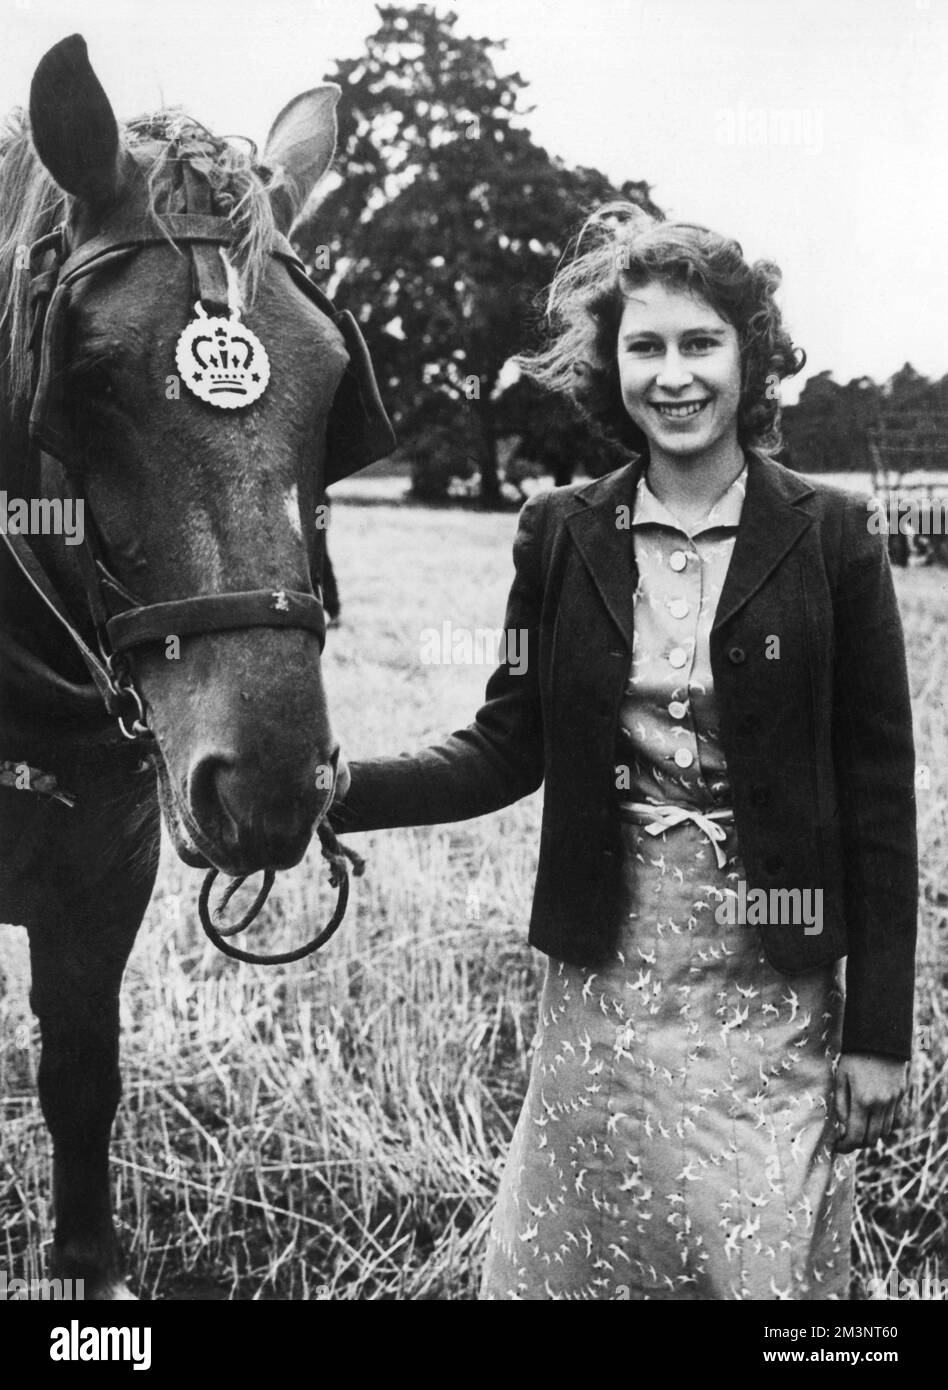 La reine Elizabeth II, quand la princesse Elizabeth, photographiée avec un des chevaux pendant la récolte à Sandringham, Norfolk, en 1943. Banque D'Images